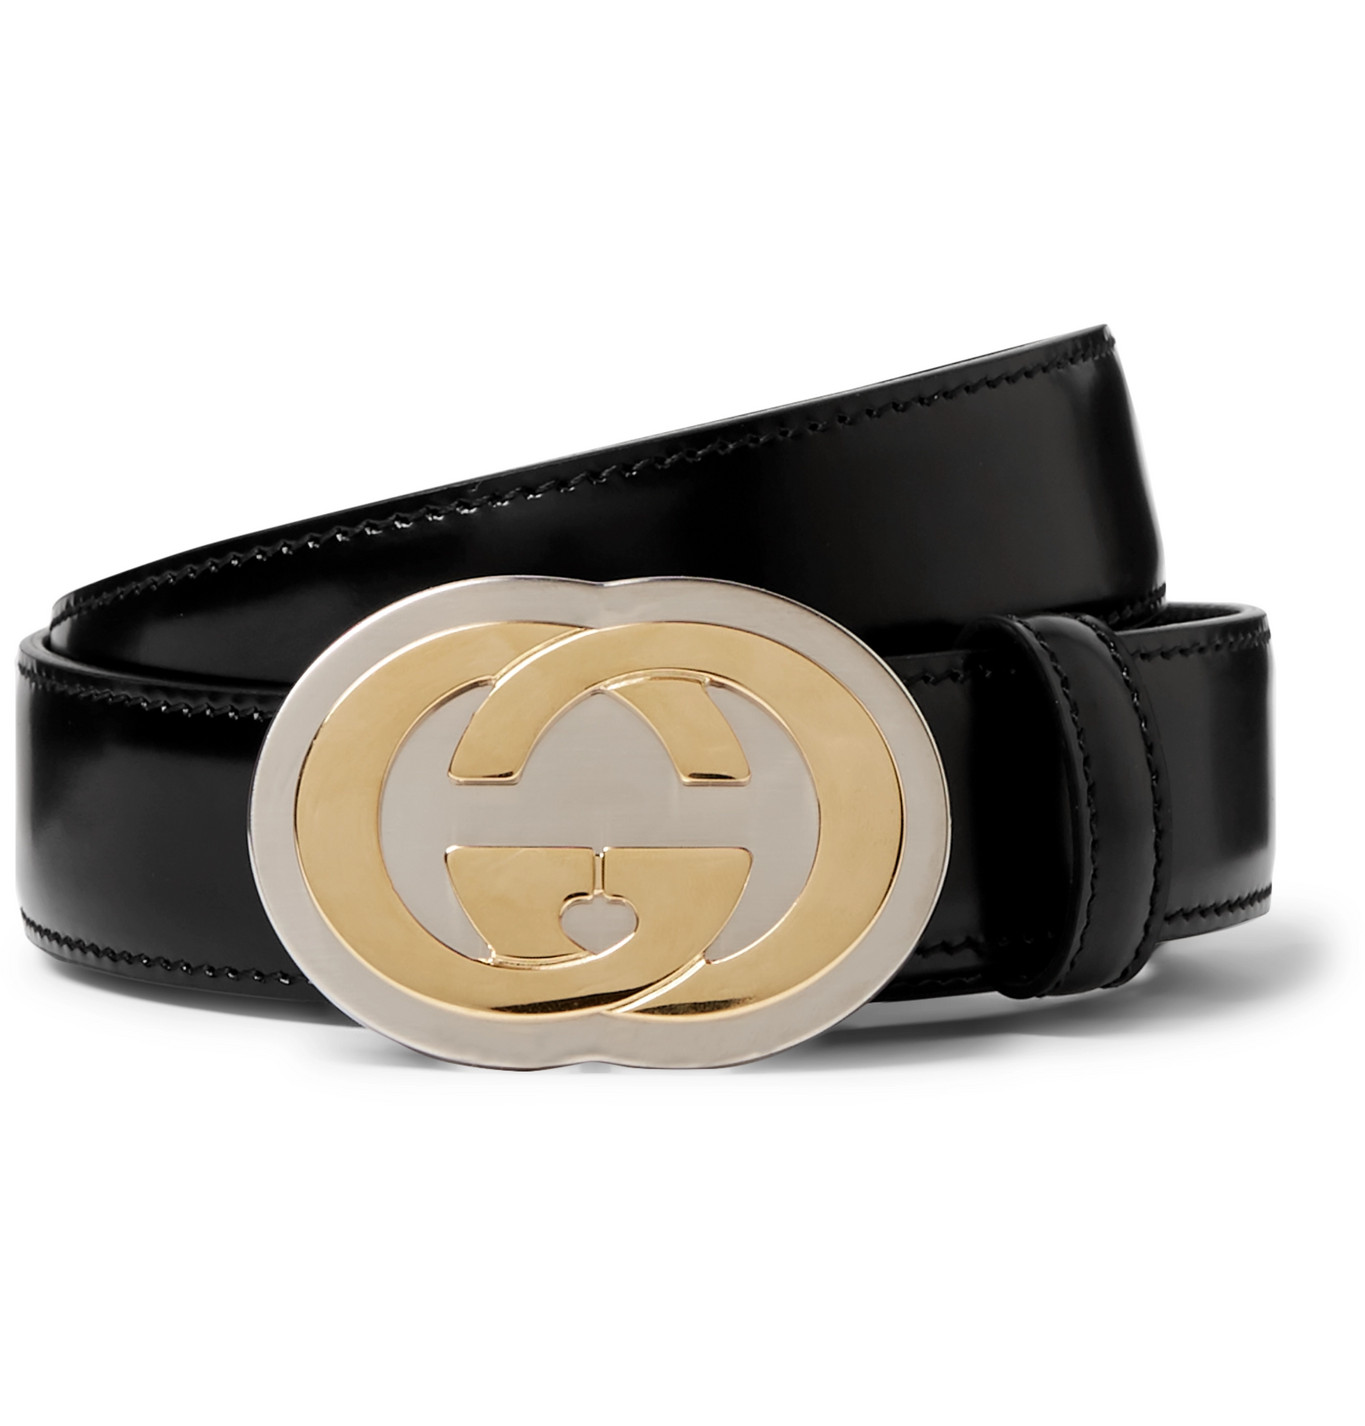 Gucci - 3cm Black Leather Belt - Men - Black | The Fashionisto